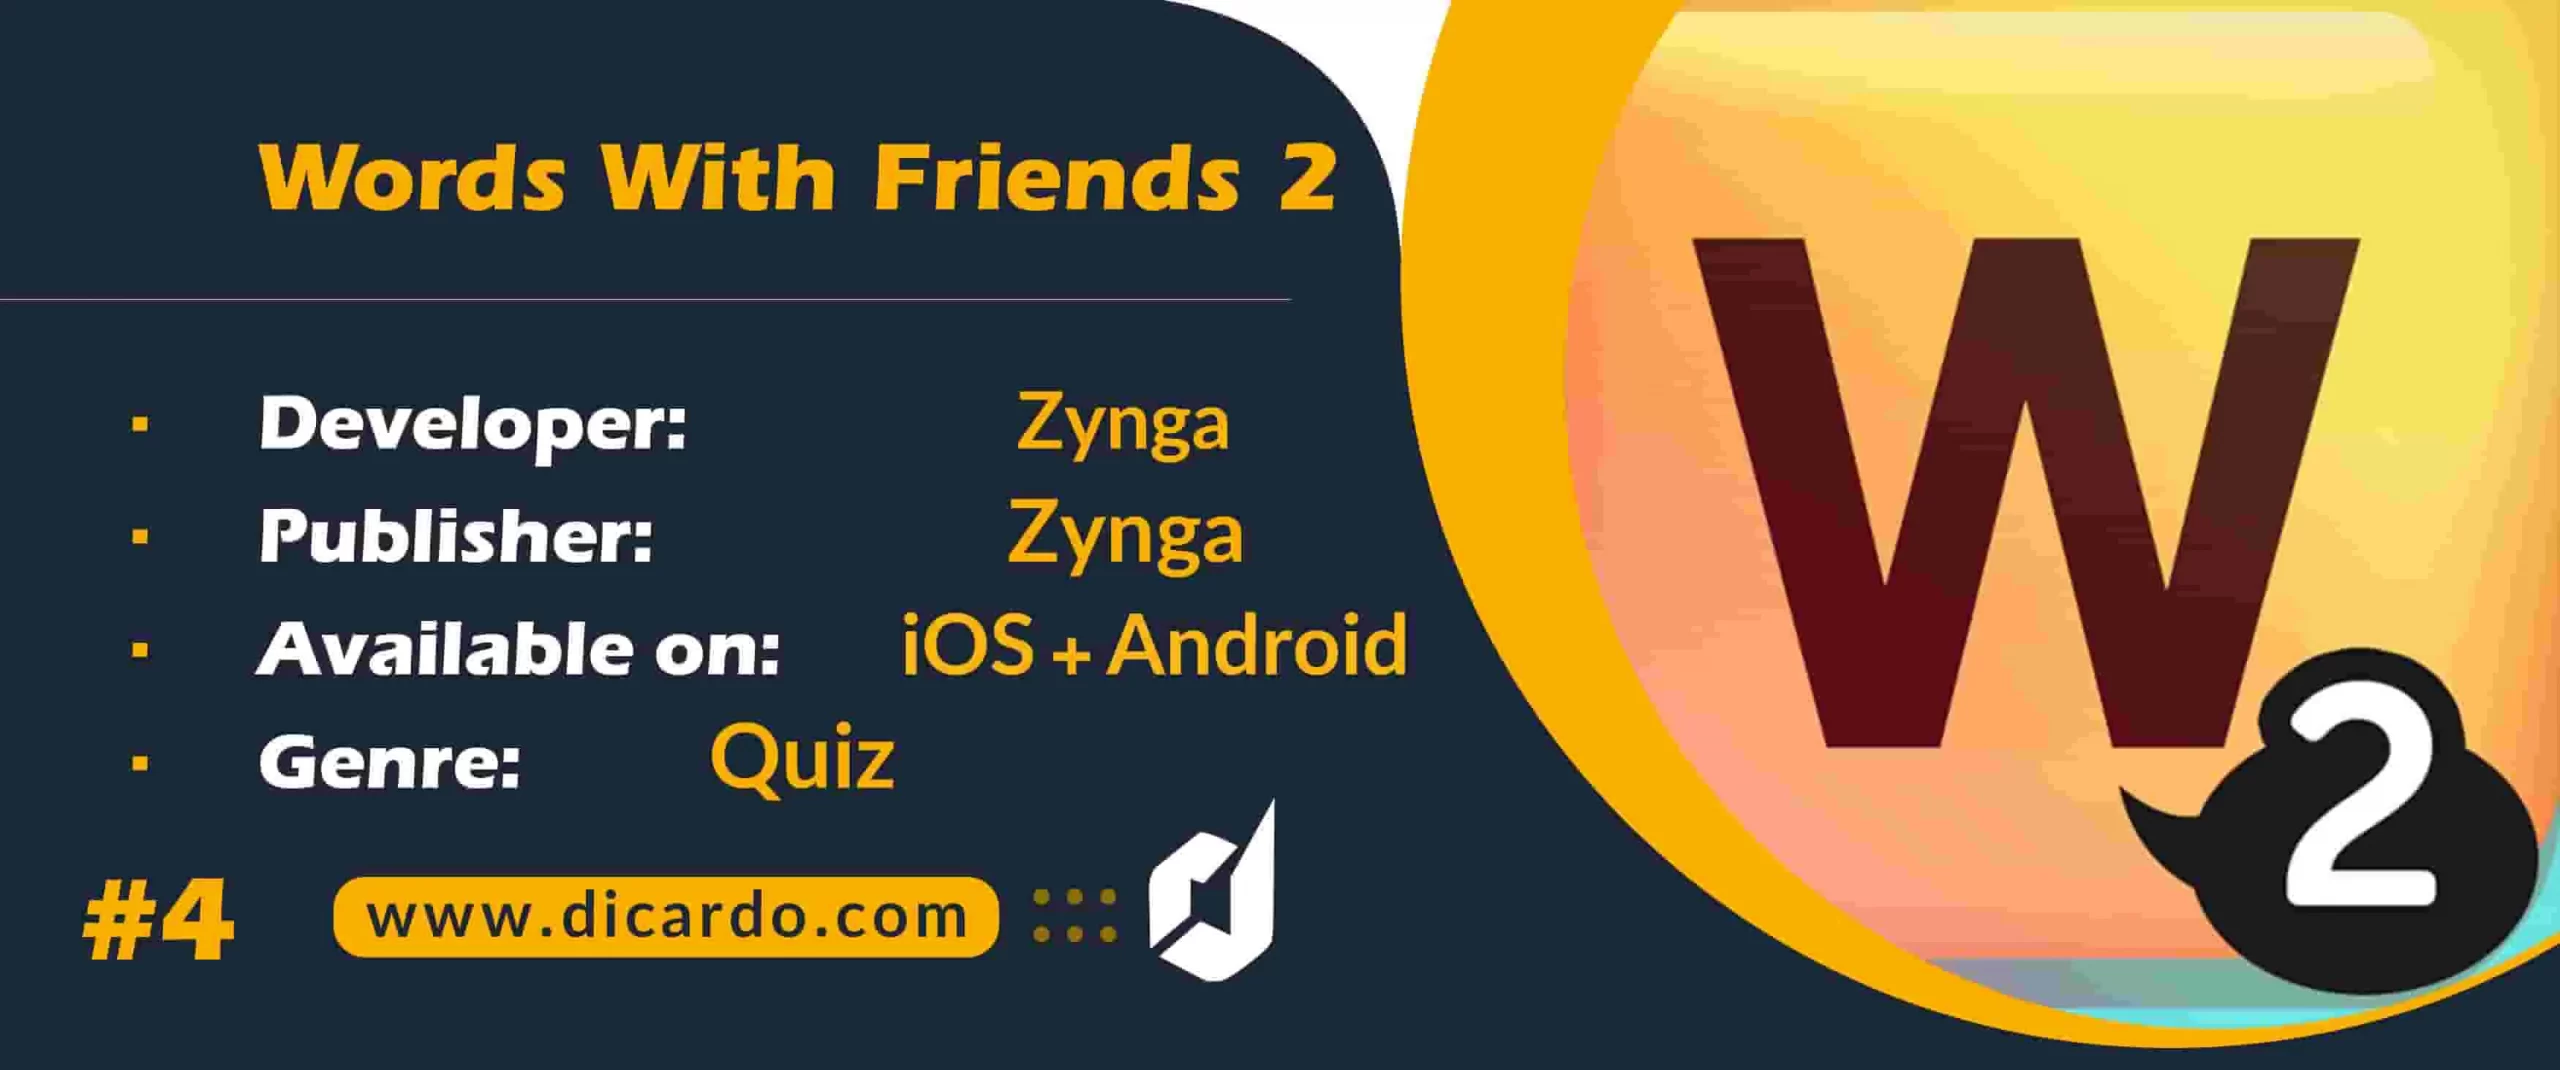 #4 ورلد ویت فرندز 2 Words With Friends 2 از بهترین بازیهای افزایش هوش برای گسترش دایره لغات شما